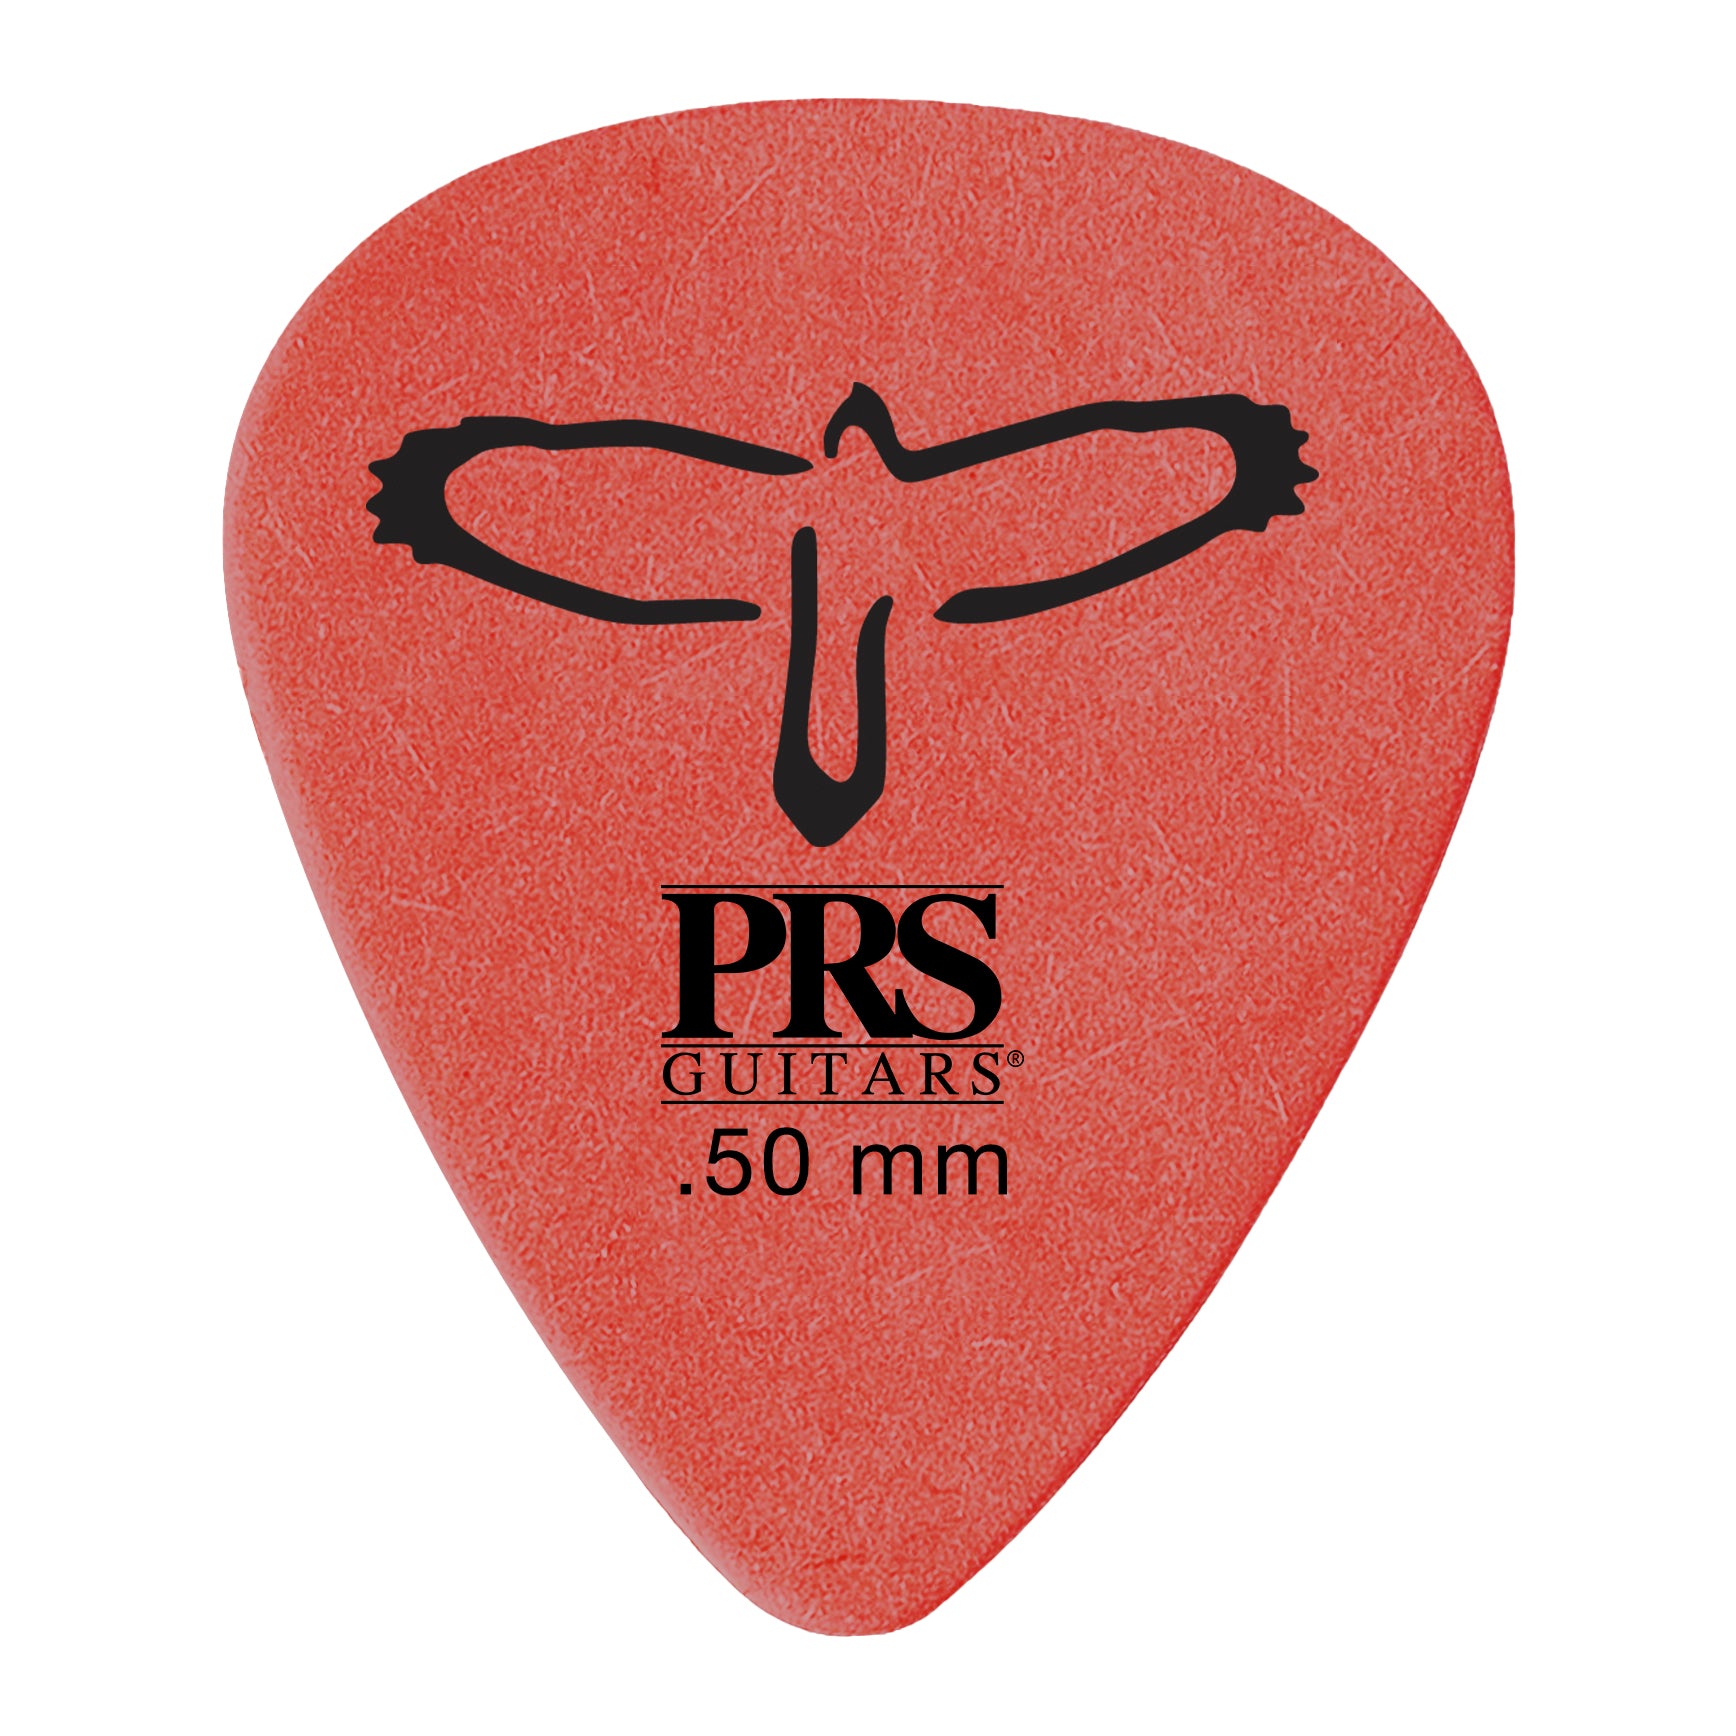 PRS Delrin Picks NEW - HIENDGUITAR Red 0.5mm / 12 Red 0.5mm PRS PRS part